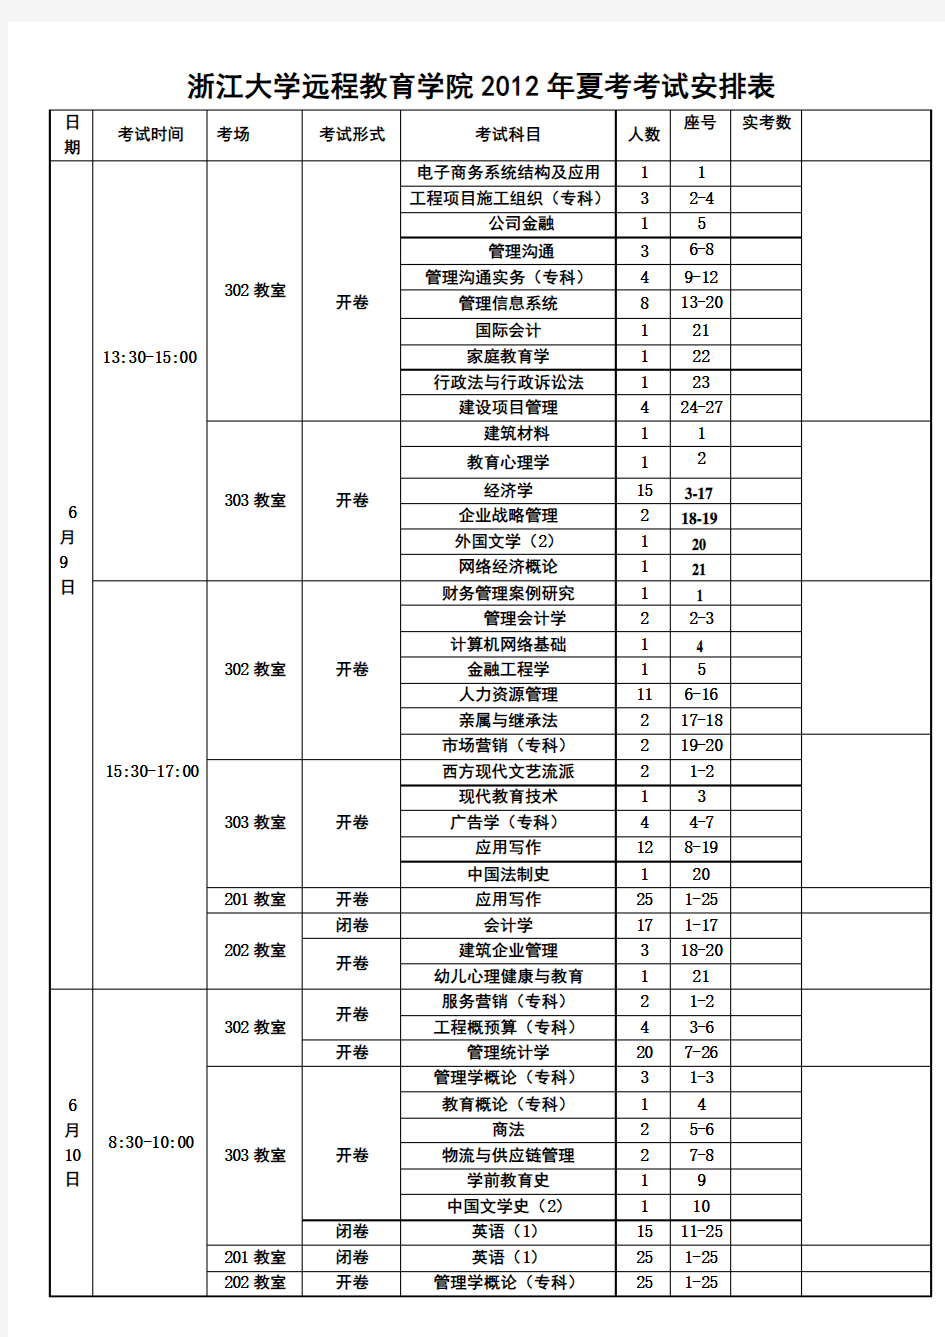 浙江大学远程教育学院2012夏考考试安排表第3项